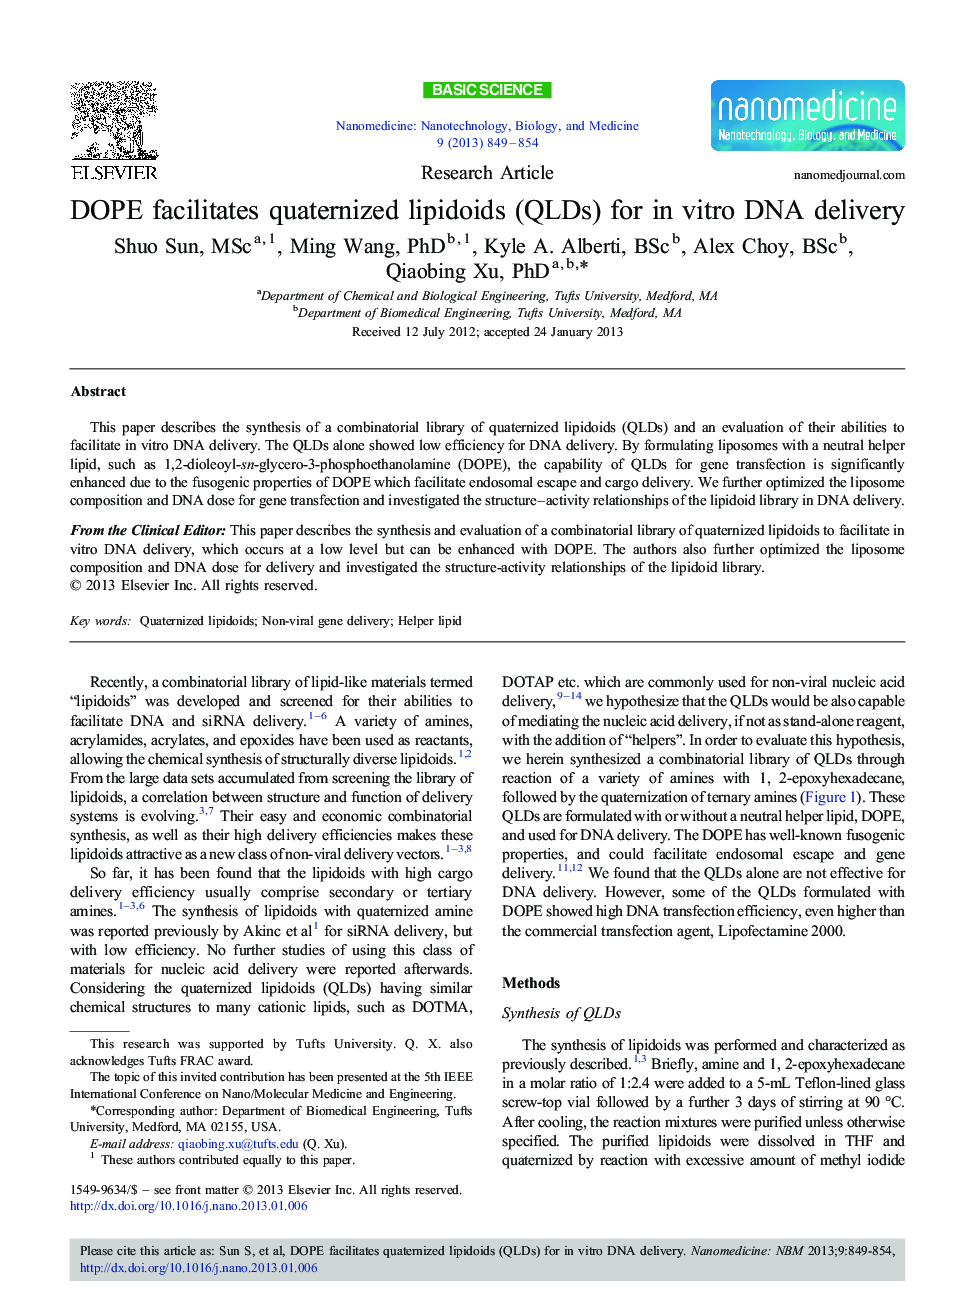 DOPE facilitates quaternized lipidoids (QLDs) for in vitro DNA delivery 